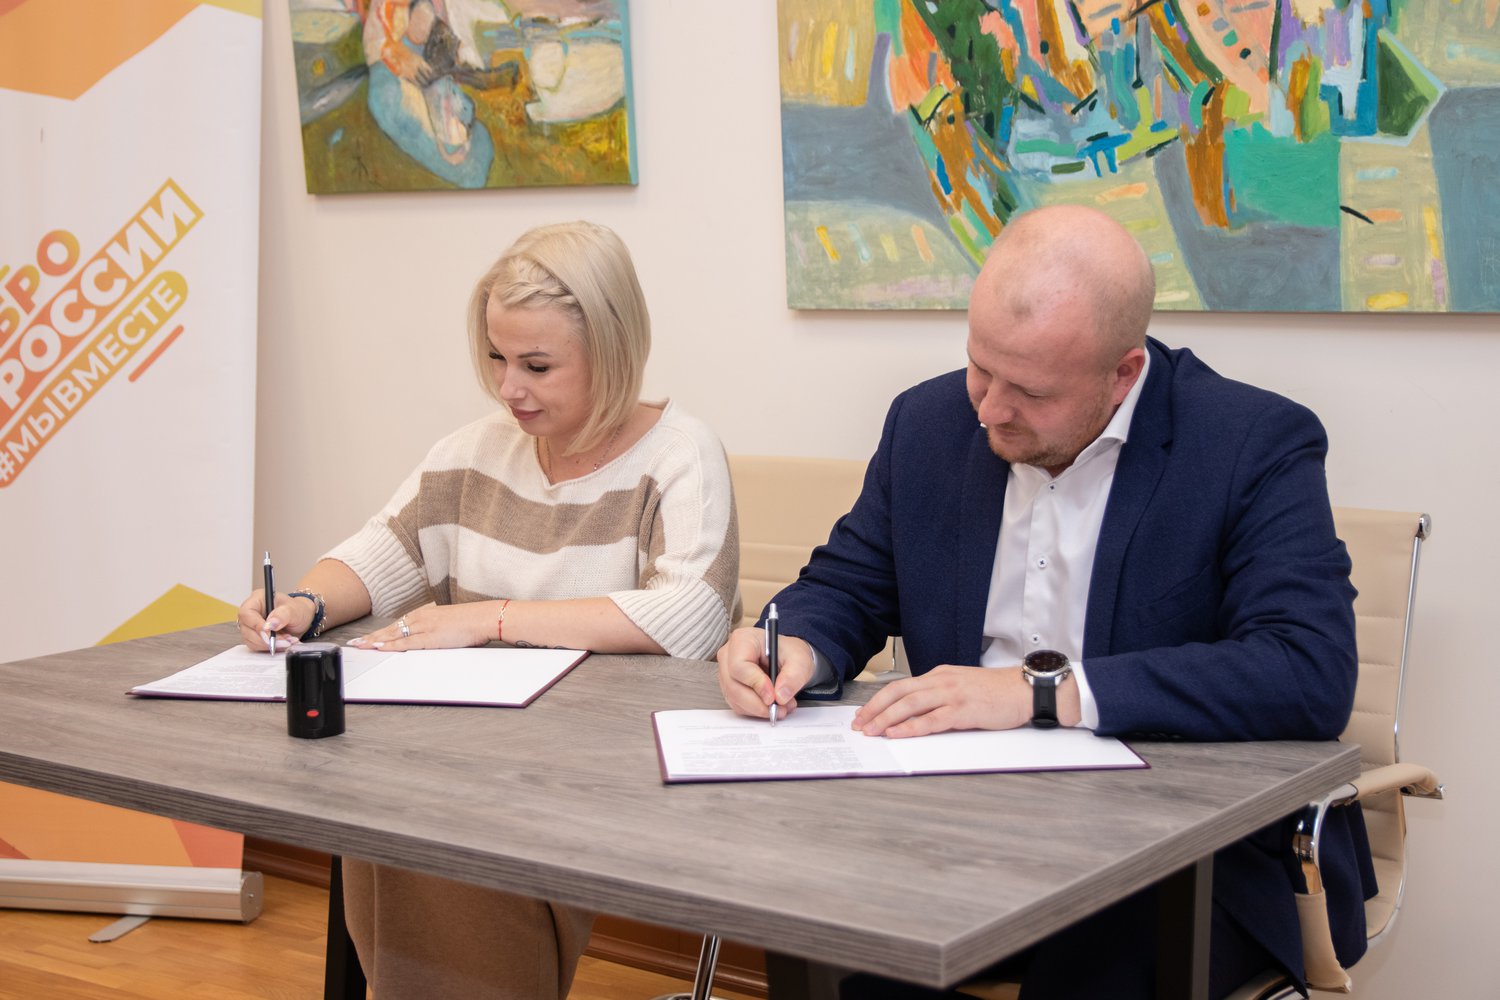 23 ноября в Центре туризма и творческих индустрий Пскова состоялось официальное открытие муниципального центра добровольчества города Пскова.